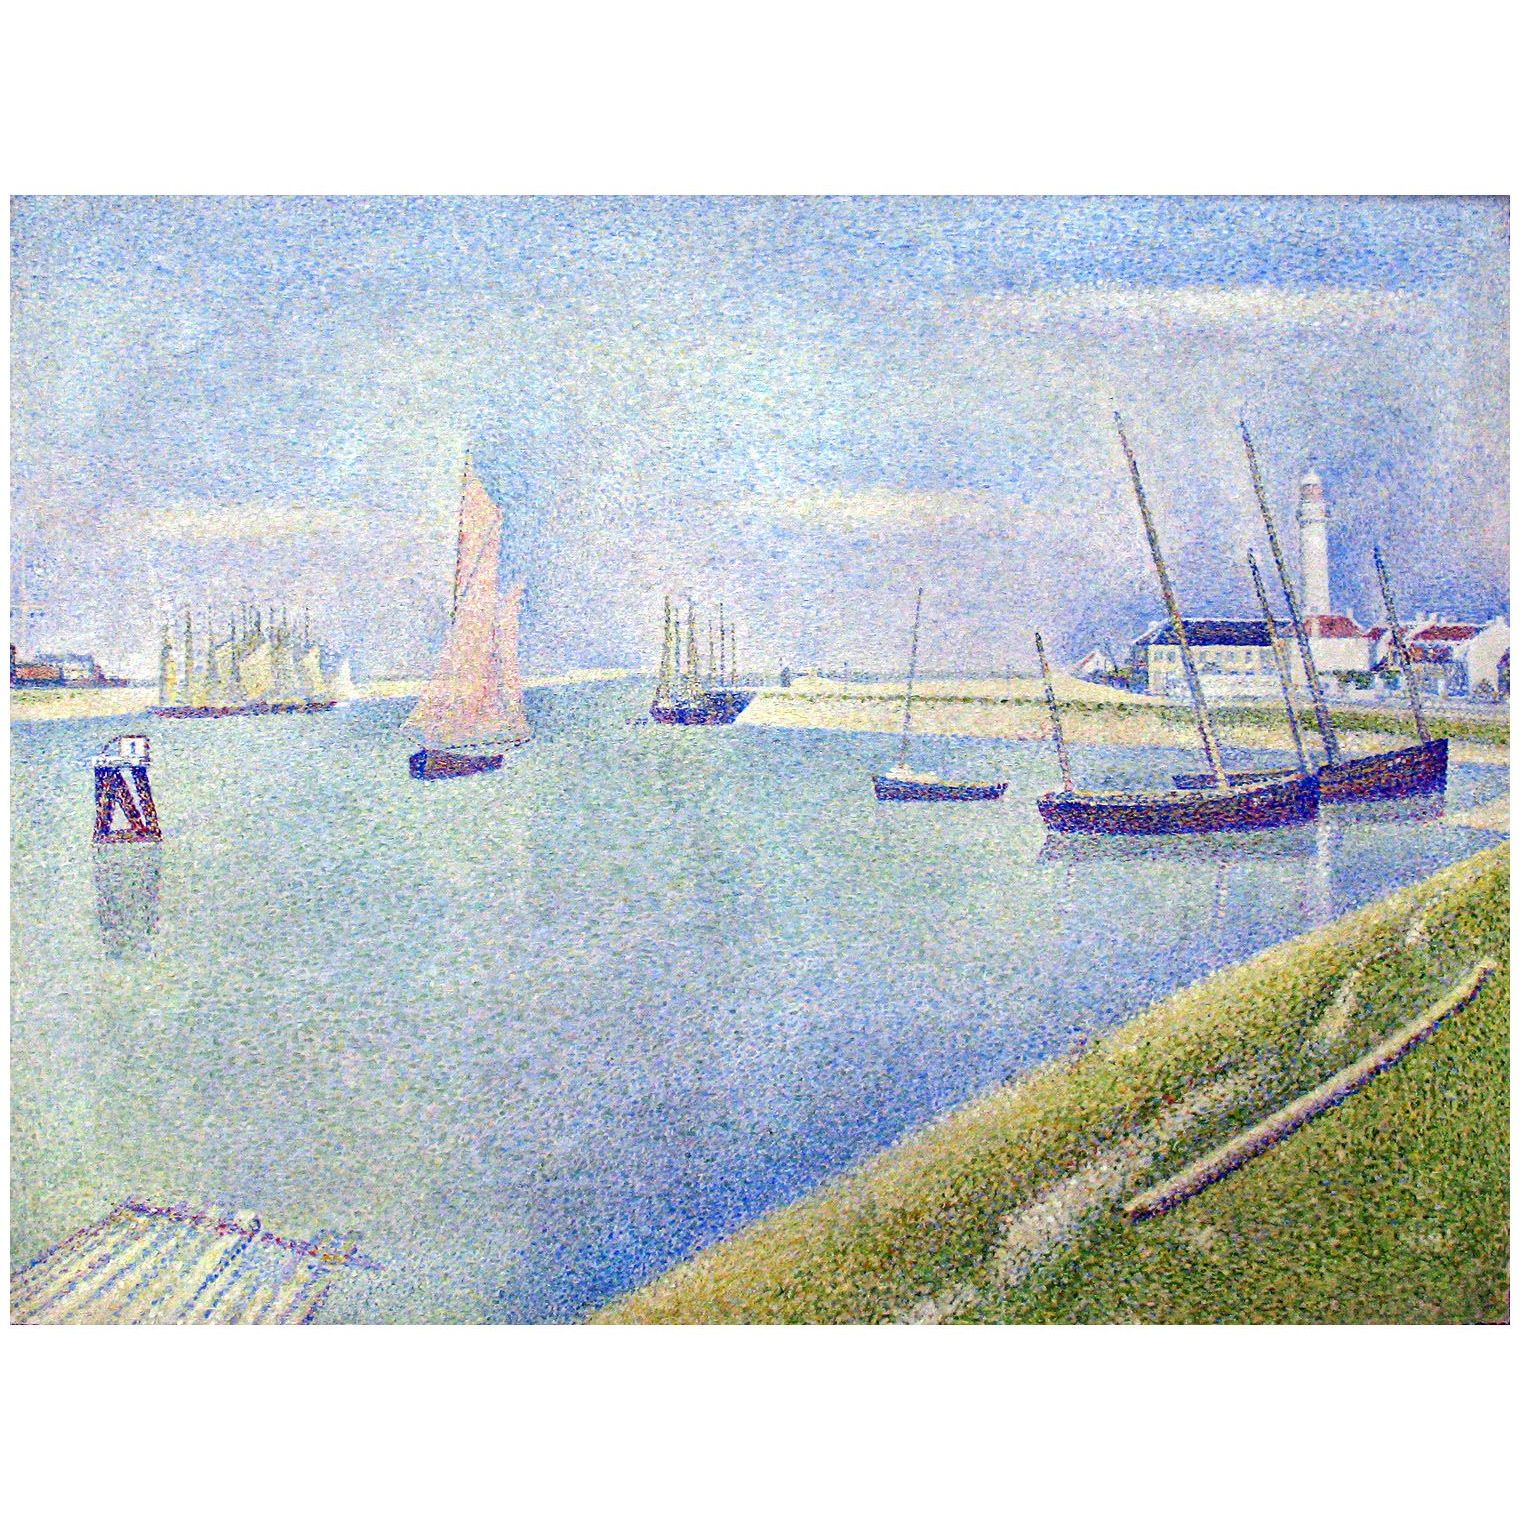 Georges Seurat. Le chenal de Gravelines. 1890. Kroller-Muller Museum Otterlo